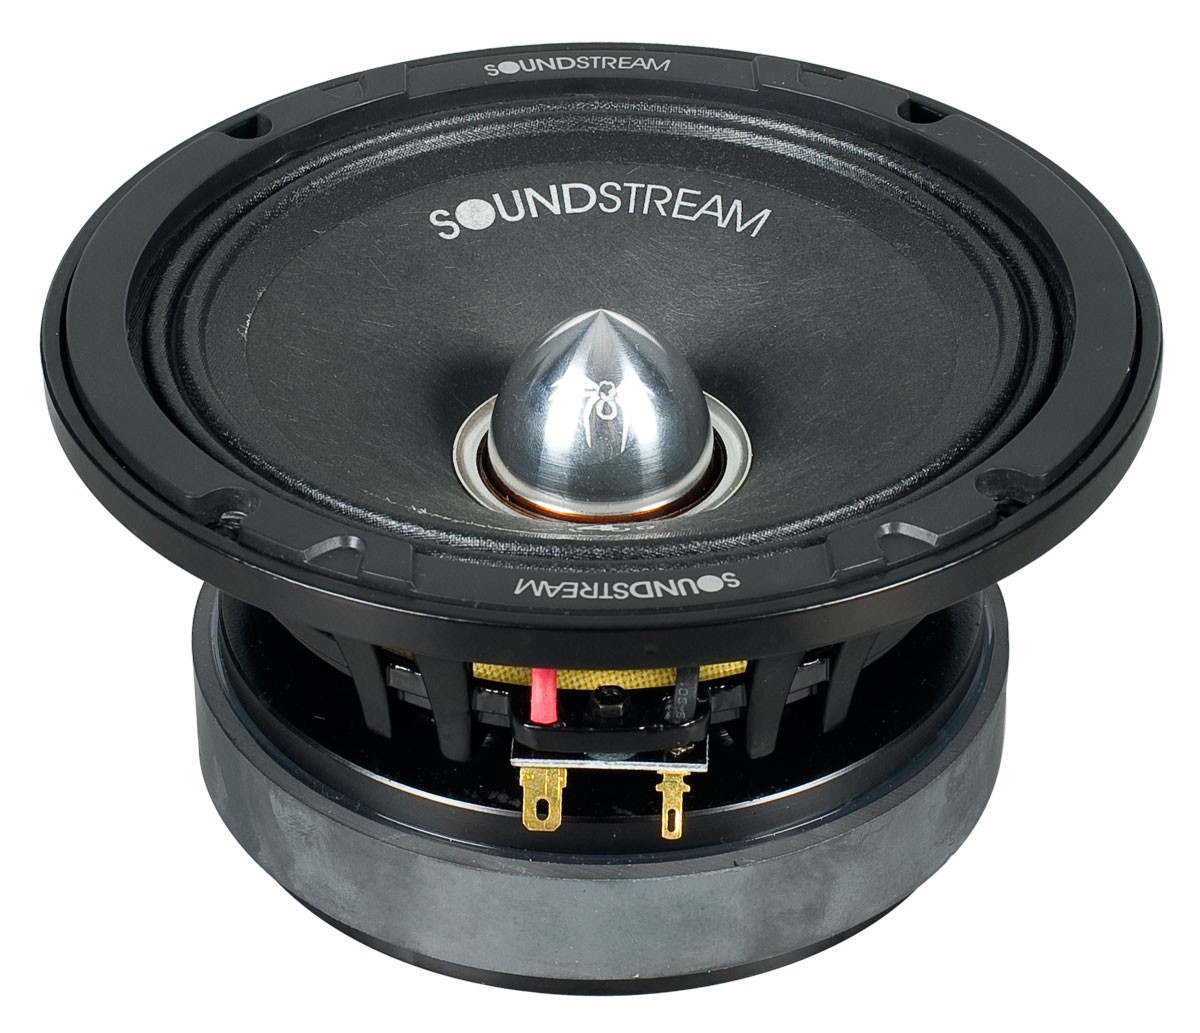 SOUNDSTREAM SoundStream SMC 654